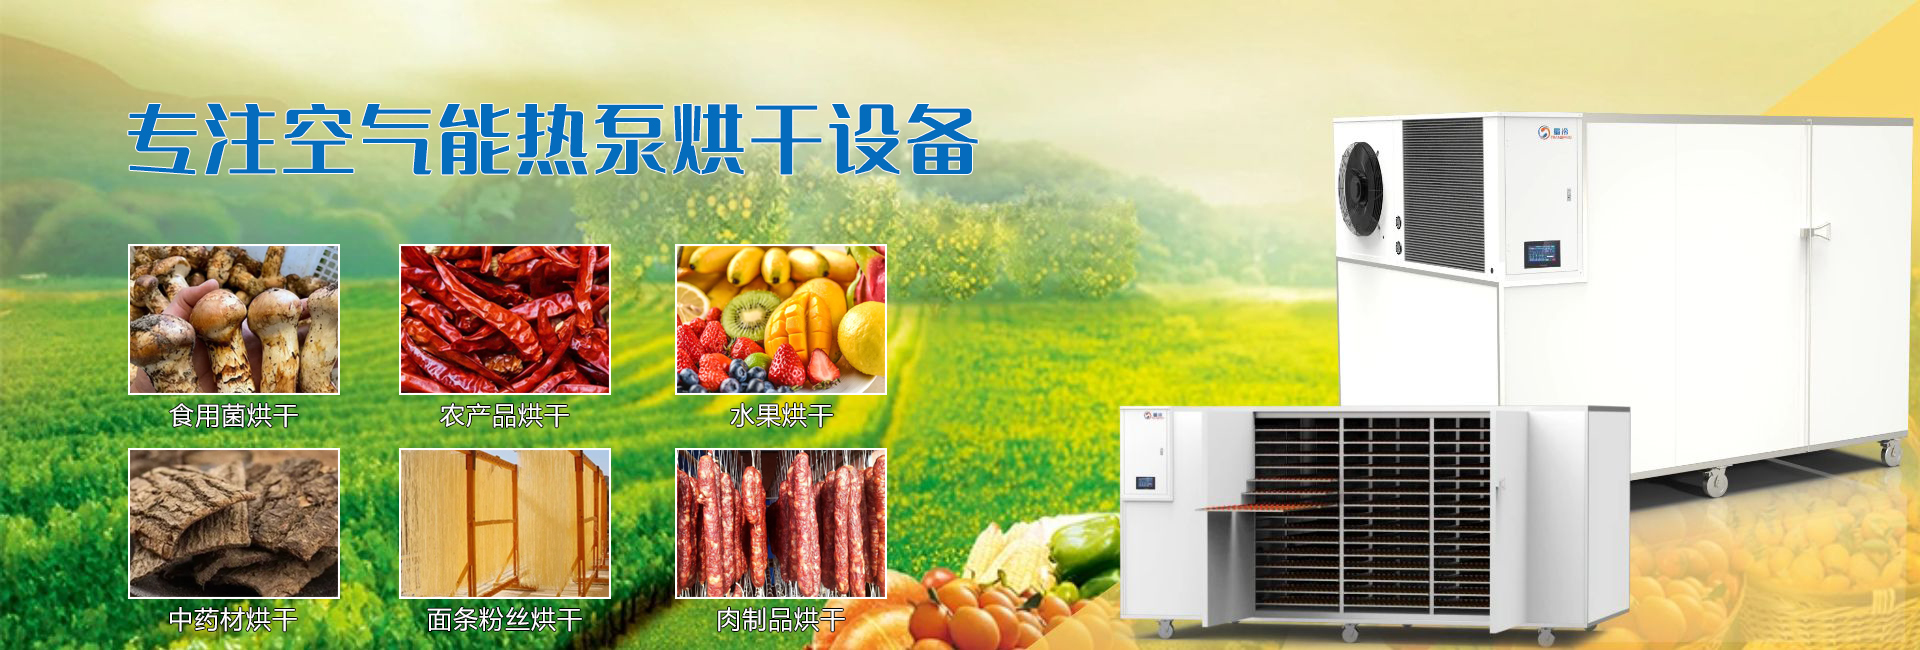 空气能热泵烘干机设备-变频冷凝机组生产厂家-四川蜀冷冷暖设备